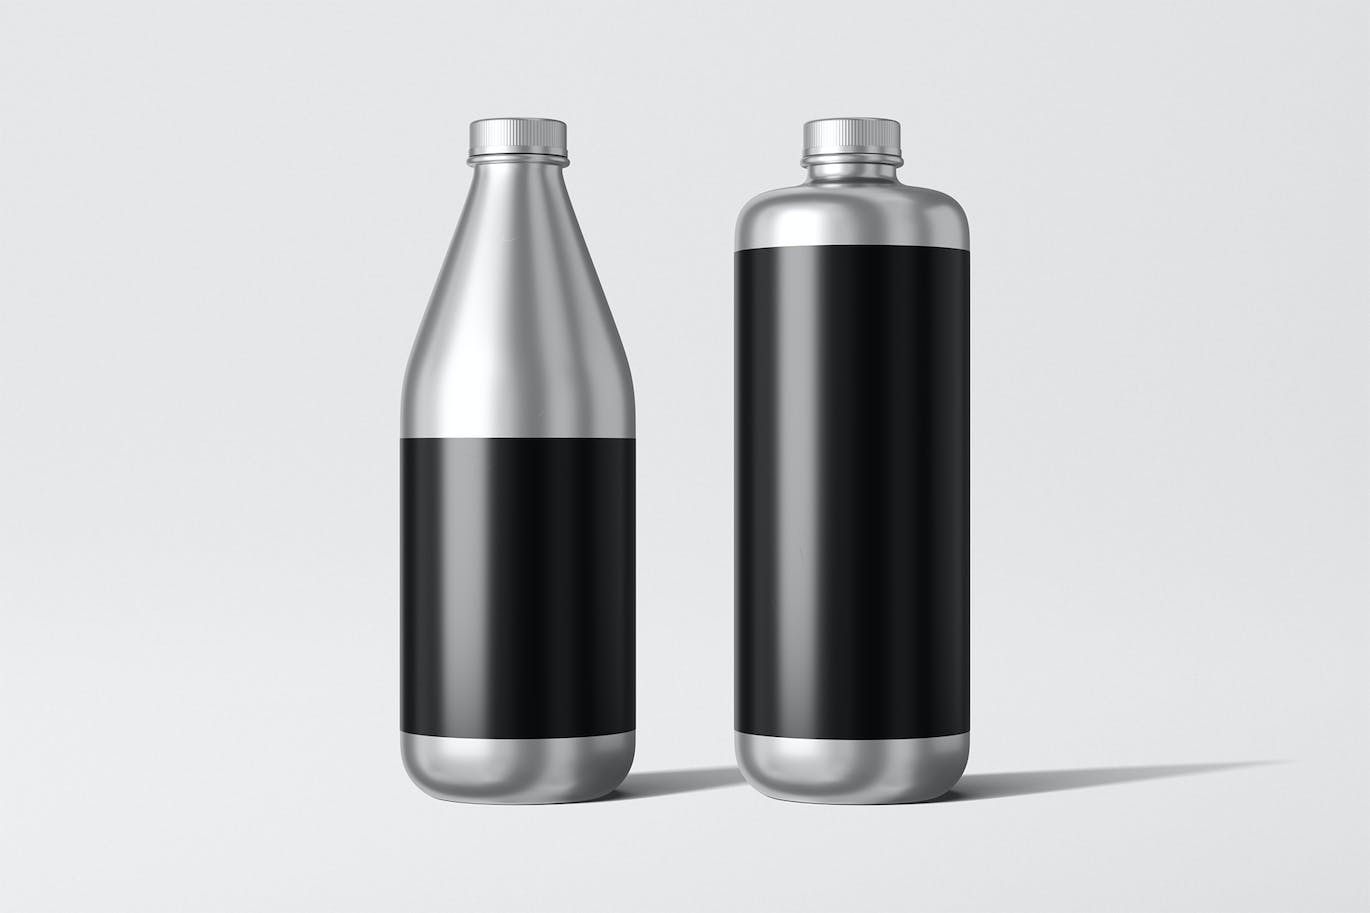 铝瓶饮水瓶包装设计样机 Aluminum Bottle Mockup 样机素材 第2张